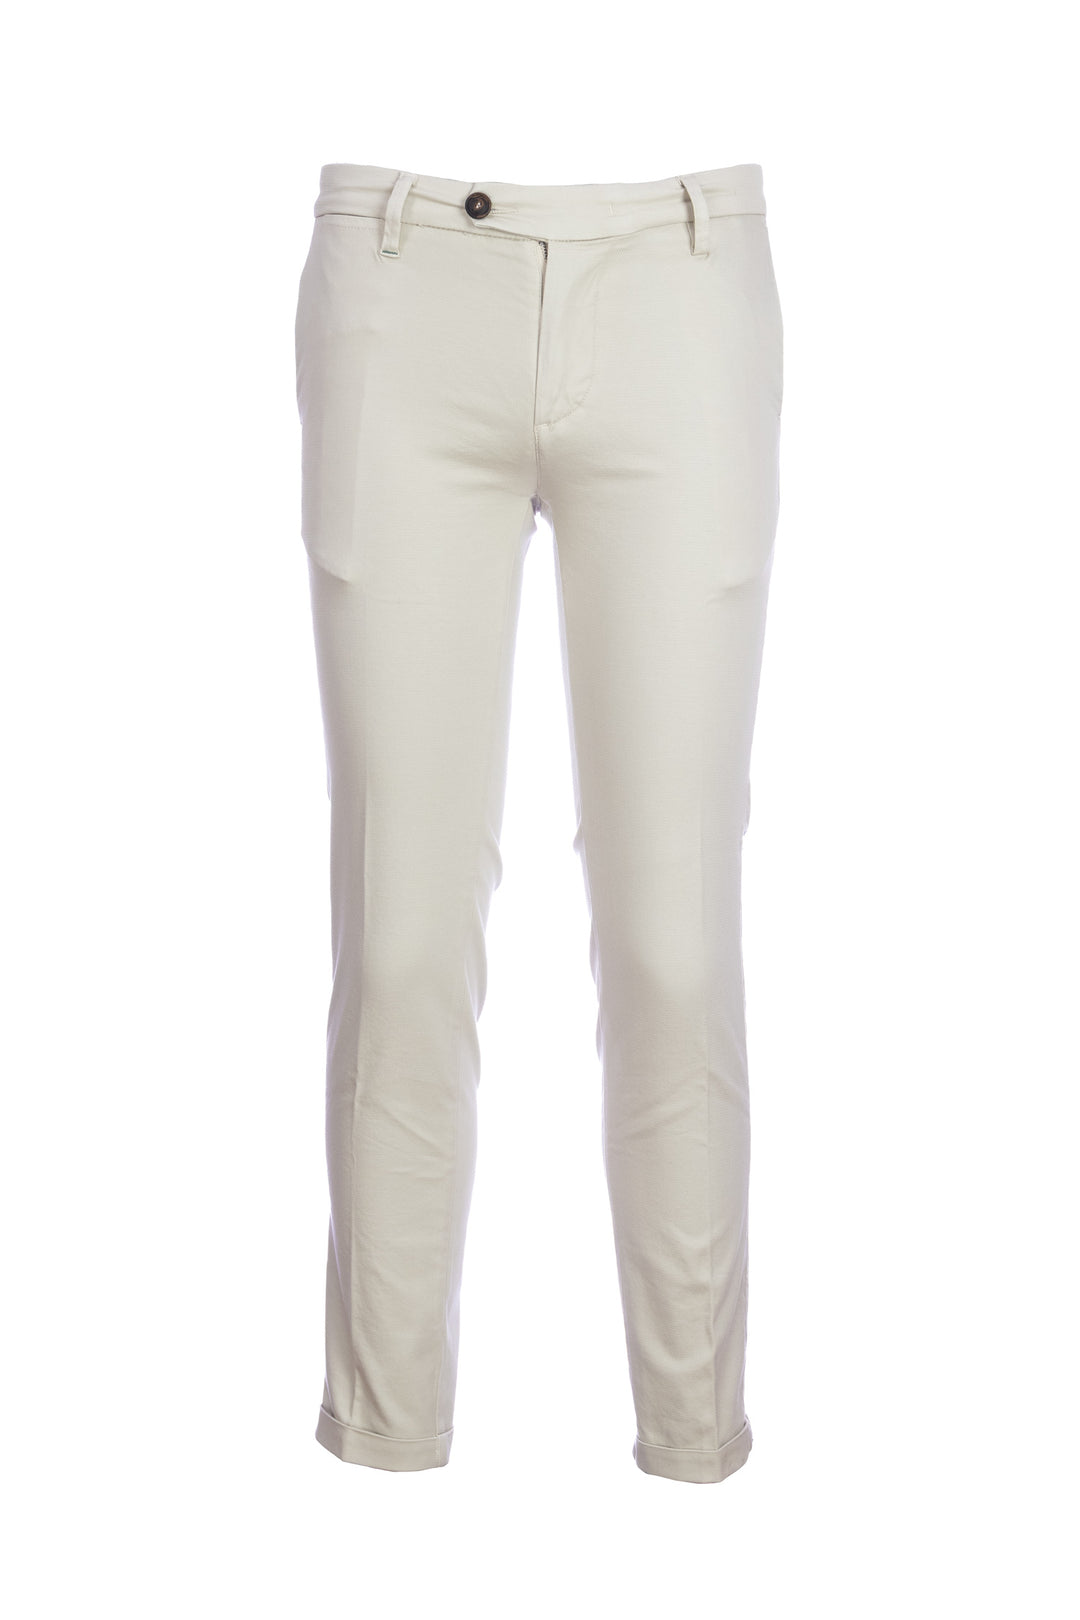 RE-HASH Pantalone chinos “MUCHA10” beige in cotone tencel con risvolto - Mancinelli 1954